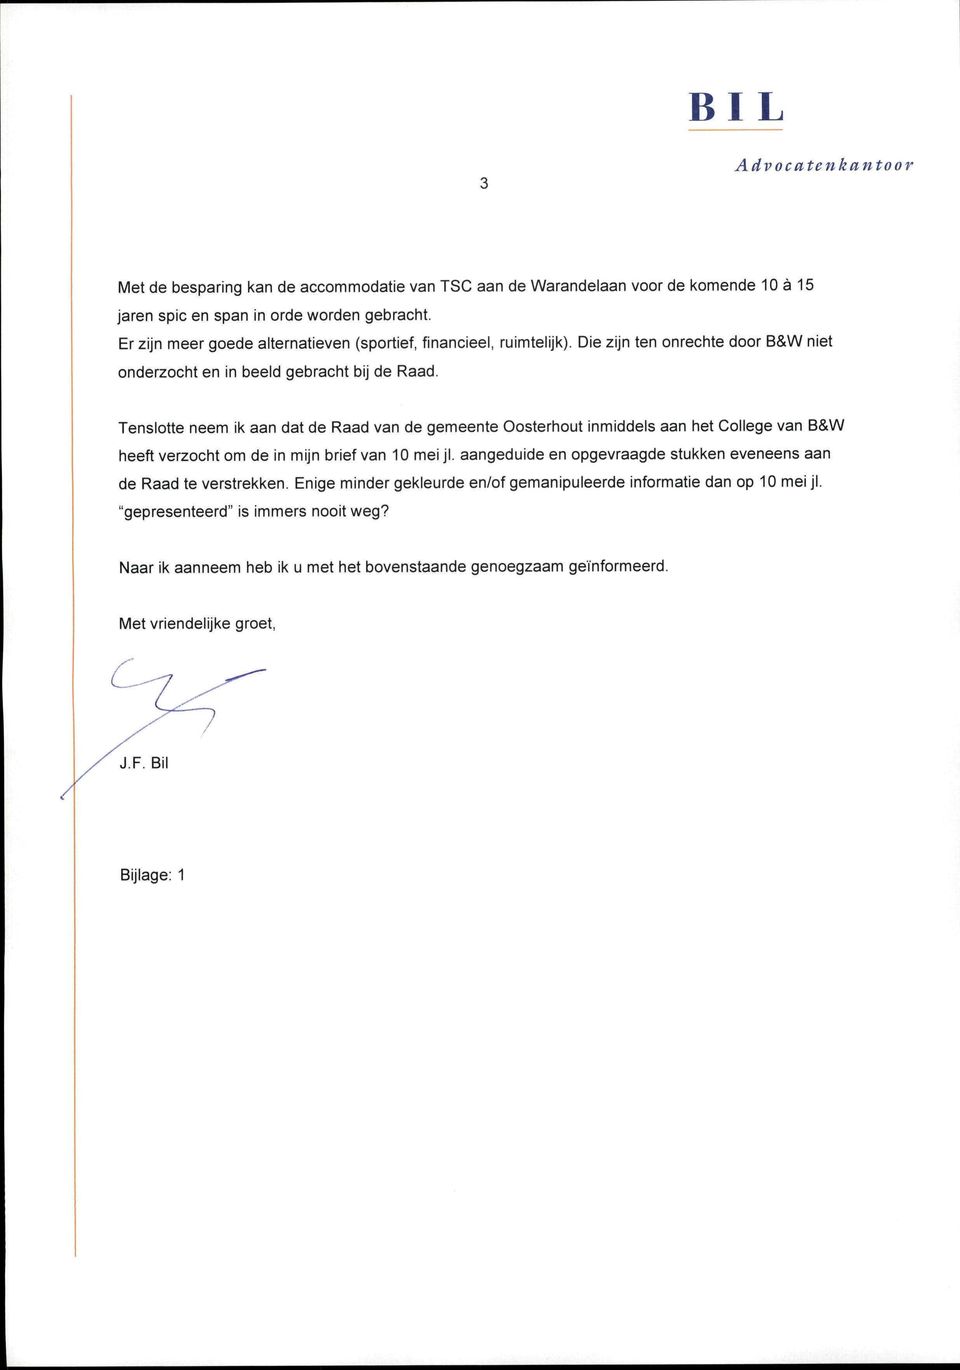 Tenslotte neem ik aan dat de Raad van de gemeente Oosterhout inmiddels aan het College van B&W heeft verzocht om de in mijn brief van 10mei jl.